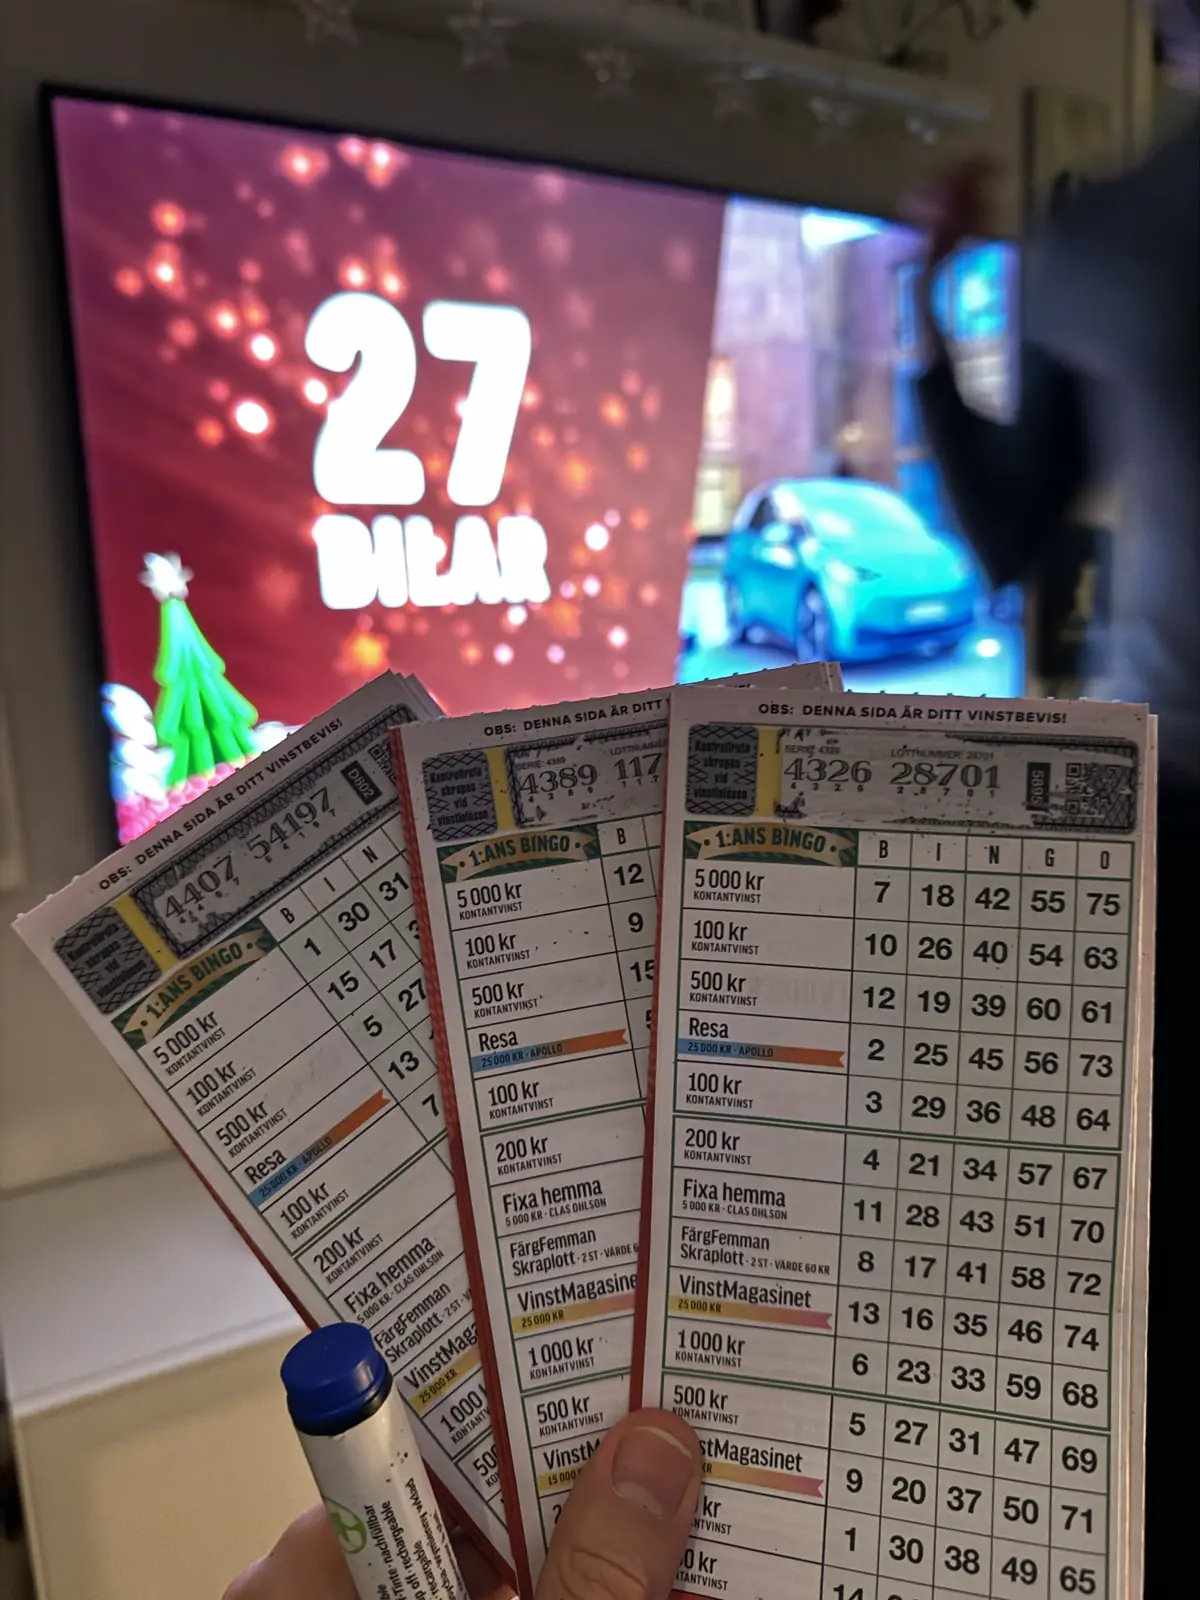 Bingo tickets held up in front of tv with bingo show